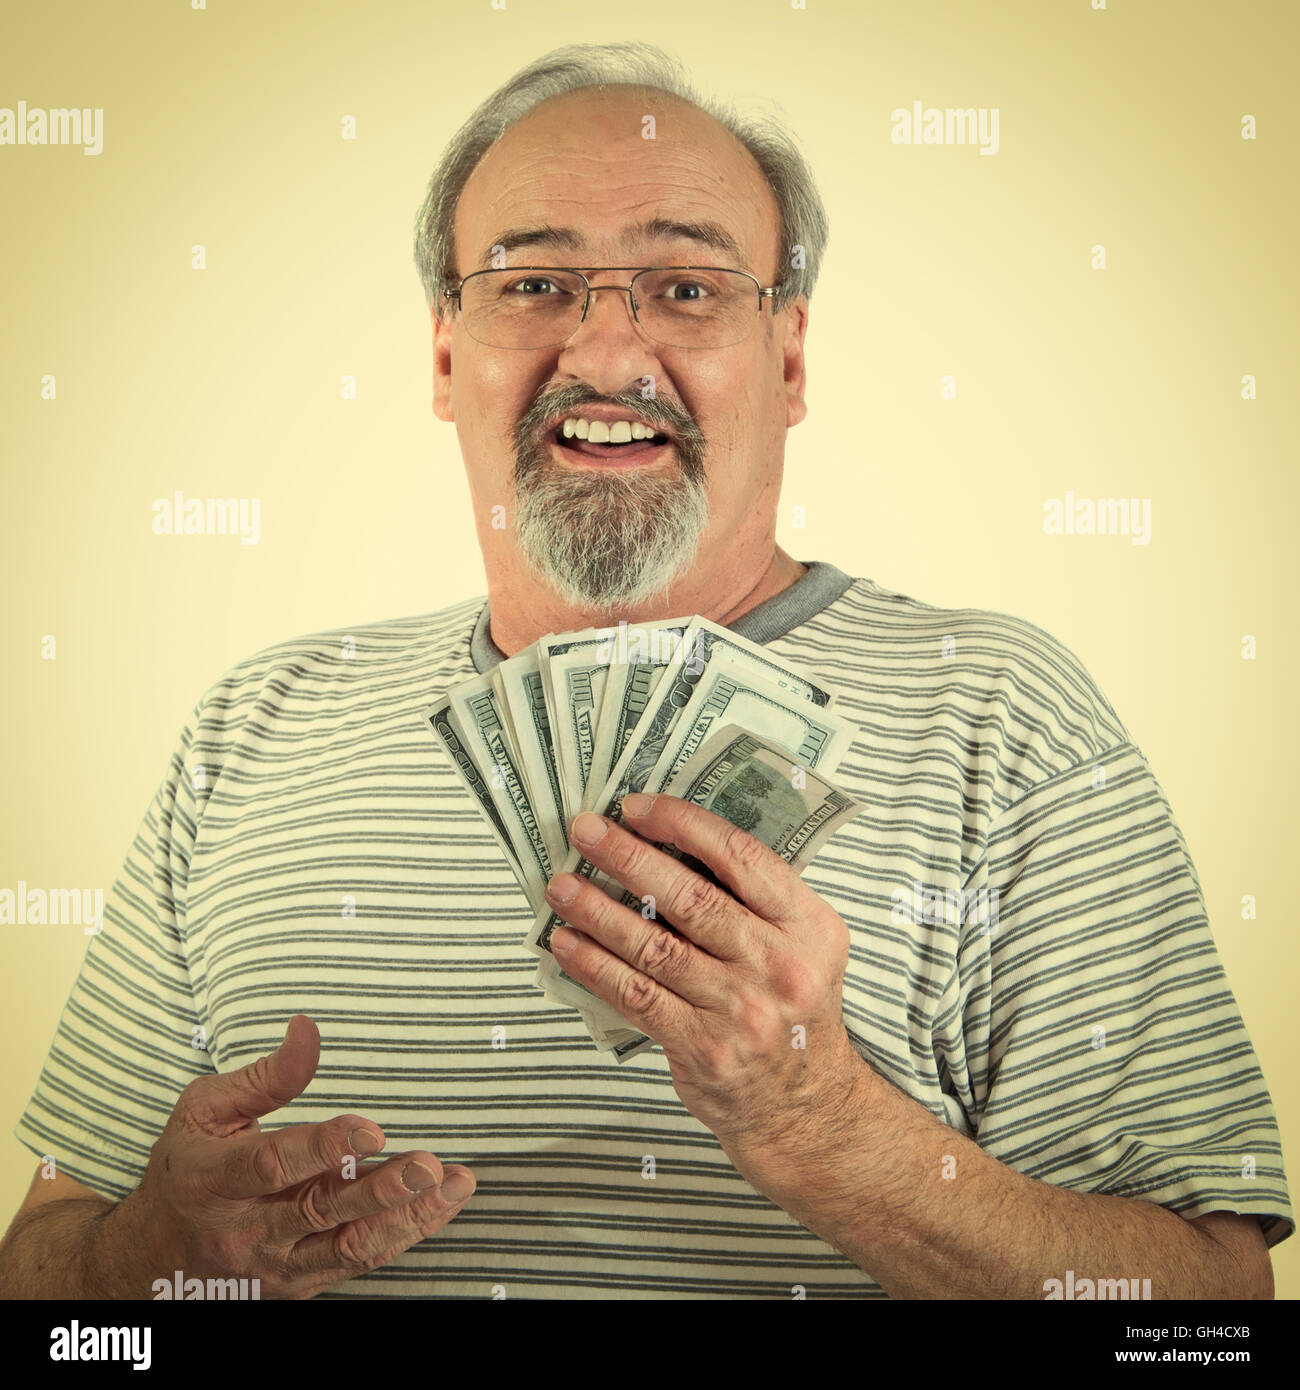 Reifer Mann lächelt halten Sie eine Handvoll amerikanischer hundert-Dollar-Scheine. Retro-Instalgram aussehen. Stockfoto